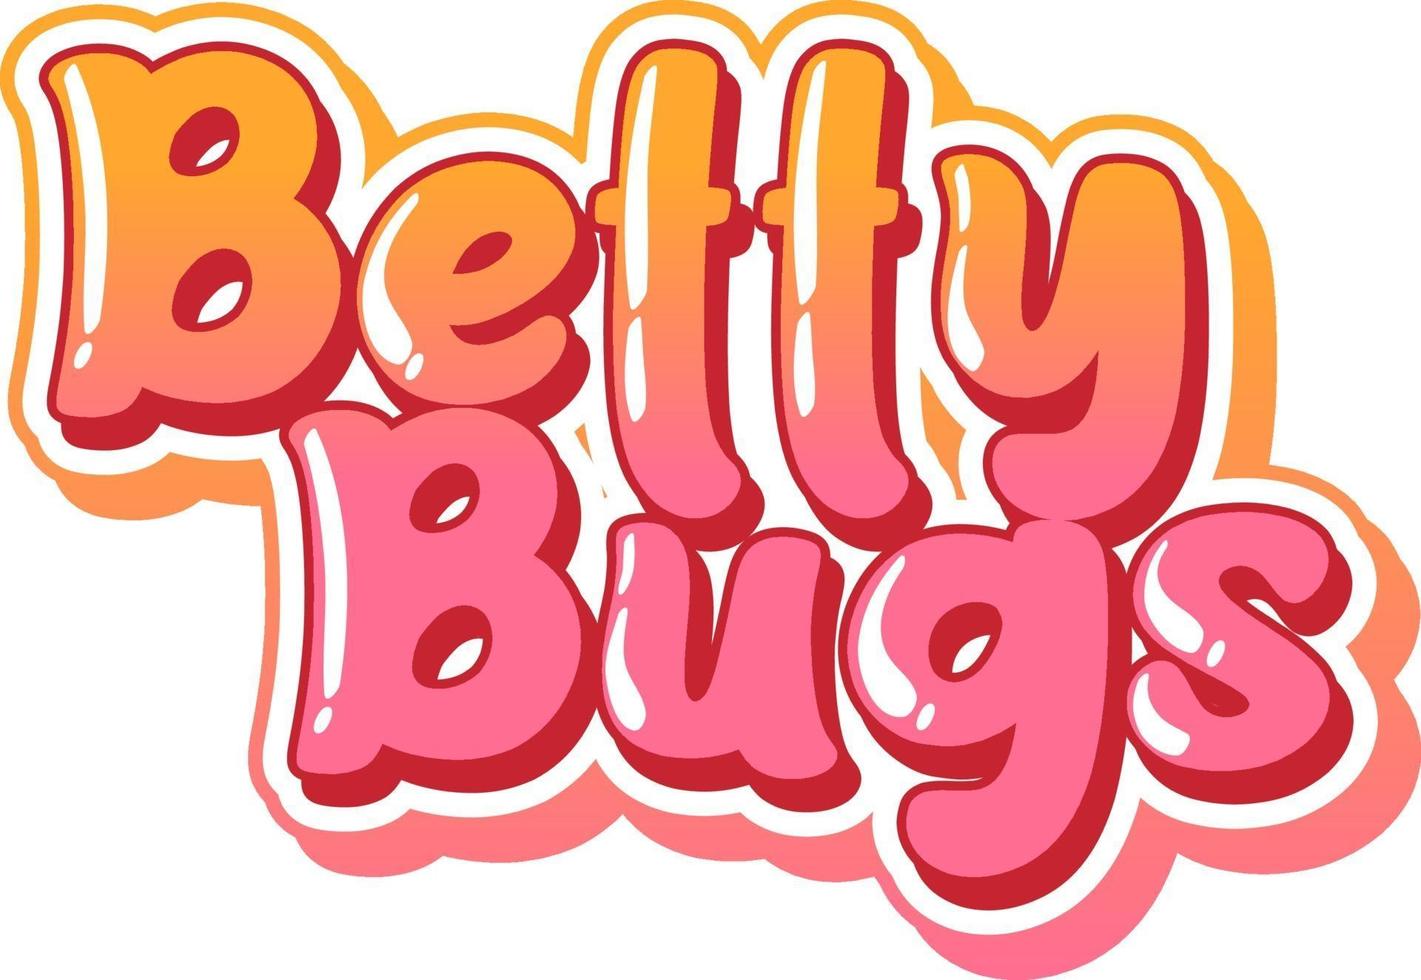 design de texto do logotipo betty bugs vetor